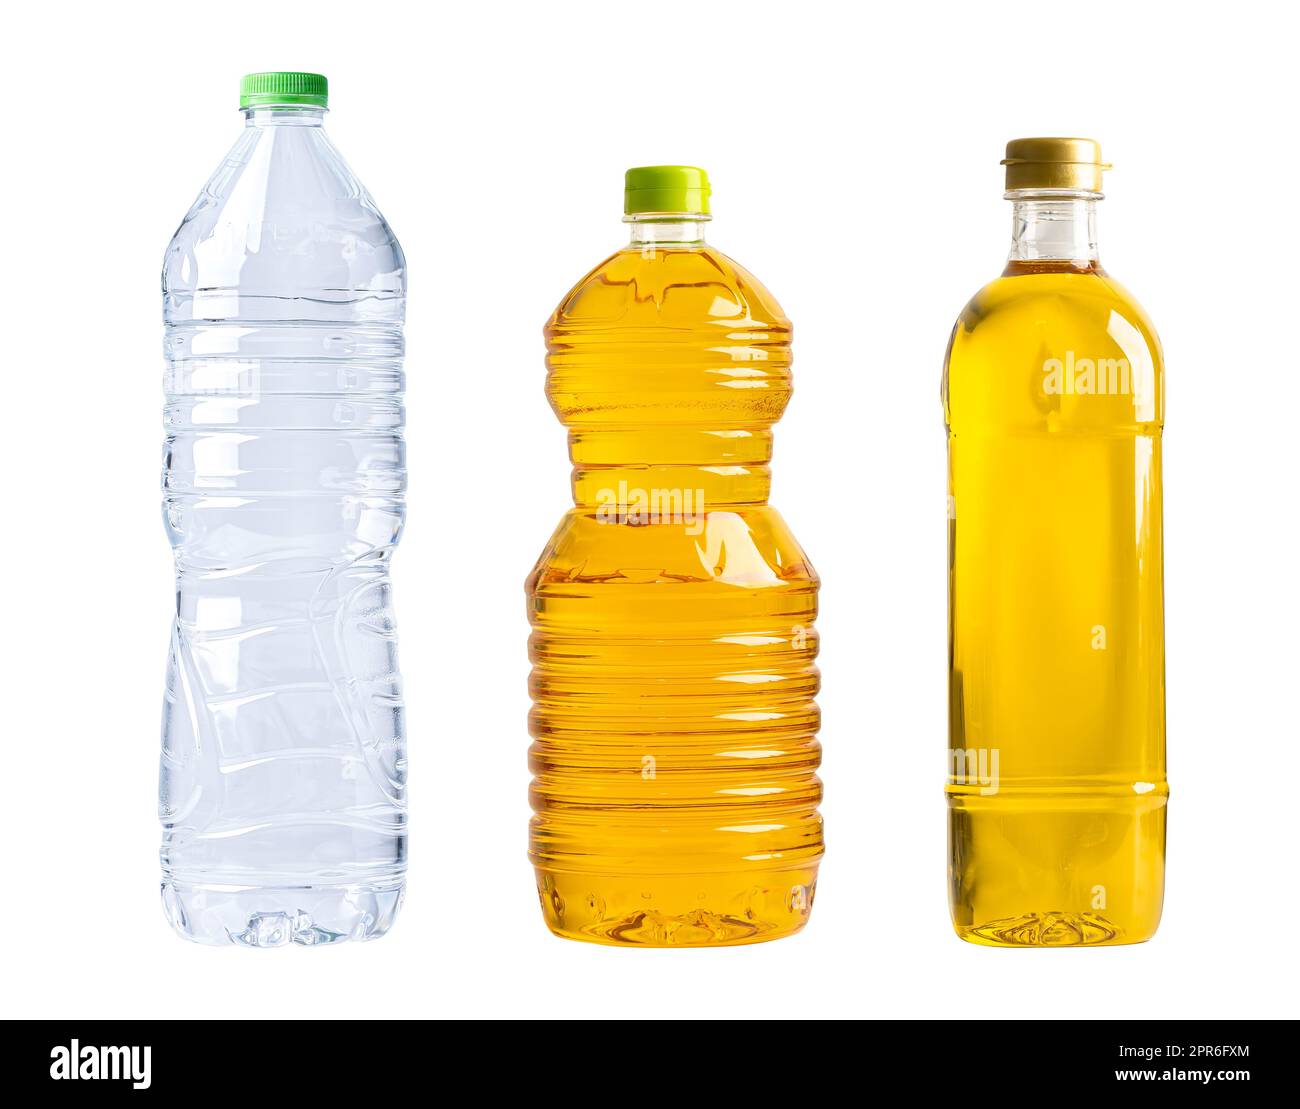 https://c8.alamy.com/compes/2pr6fxm/botella-de-plastico-de-agua-y-aceite-aislada-sobre-fondo-blanco-2pr6fxm.jpg